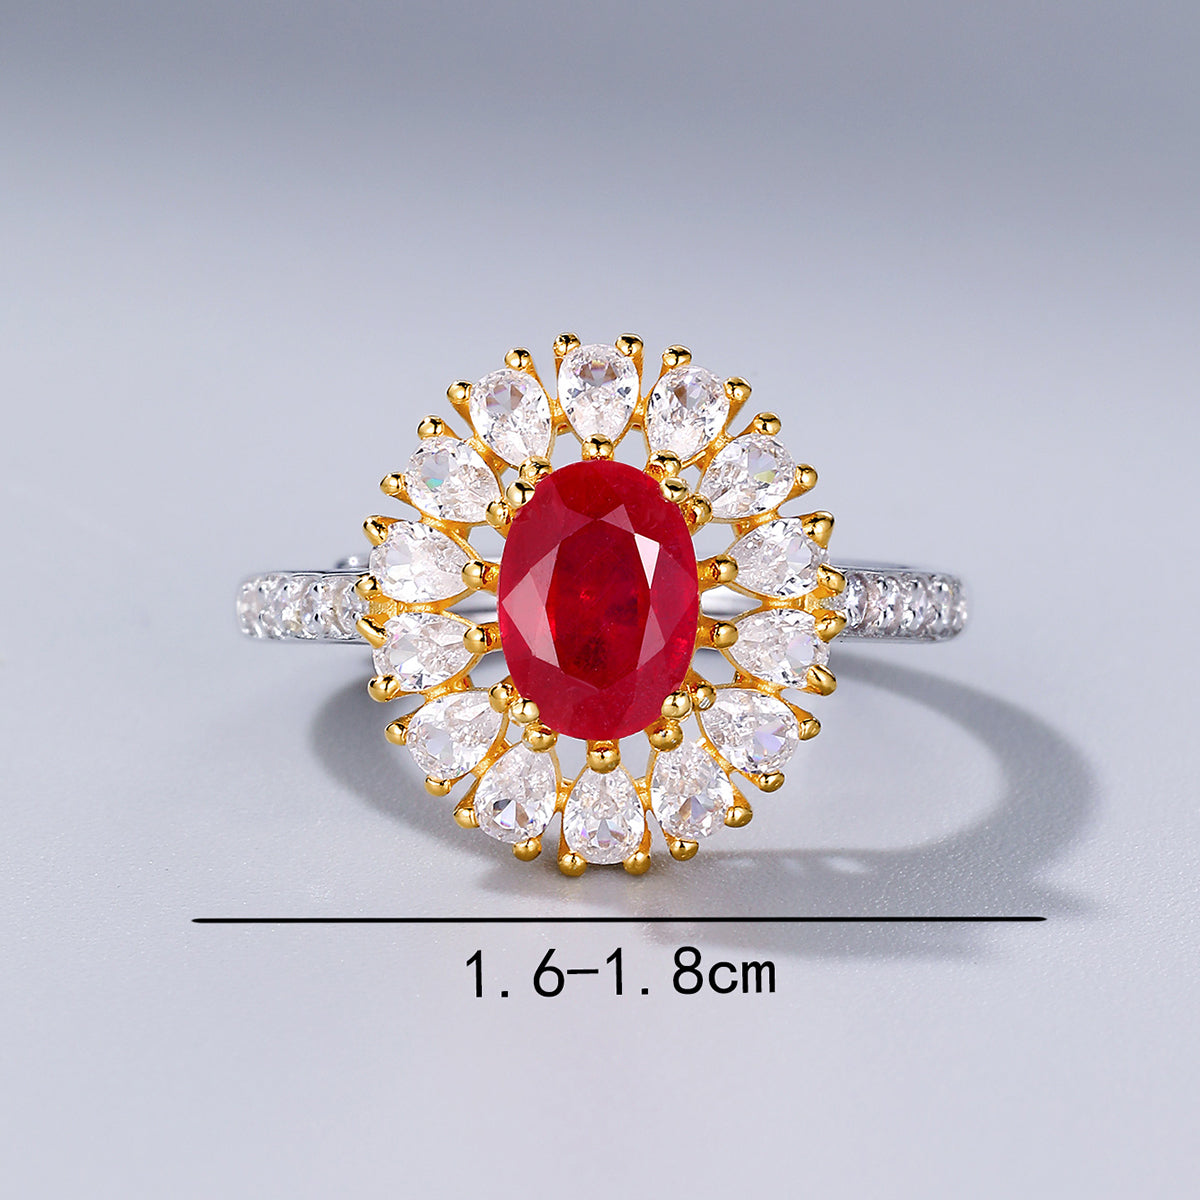 Fashion Temperament Senior Sense Luxury Shiny Passionate Wedding Ring 925 Silver Lnlaid Ruby Flower Ring